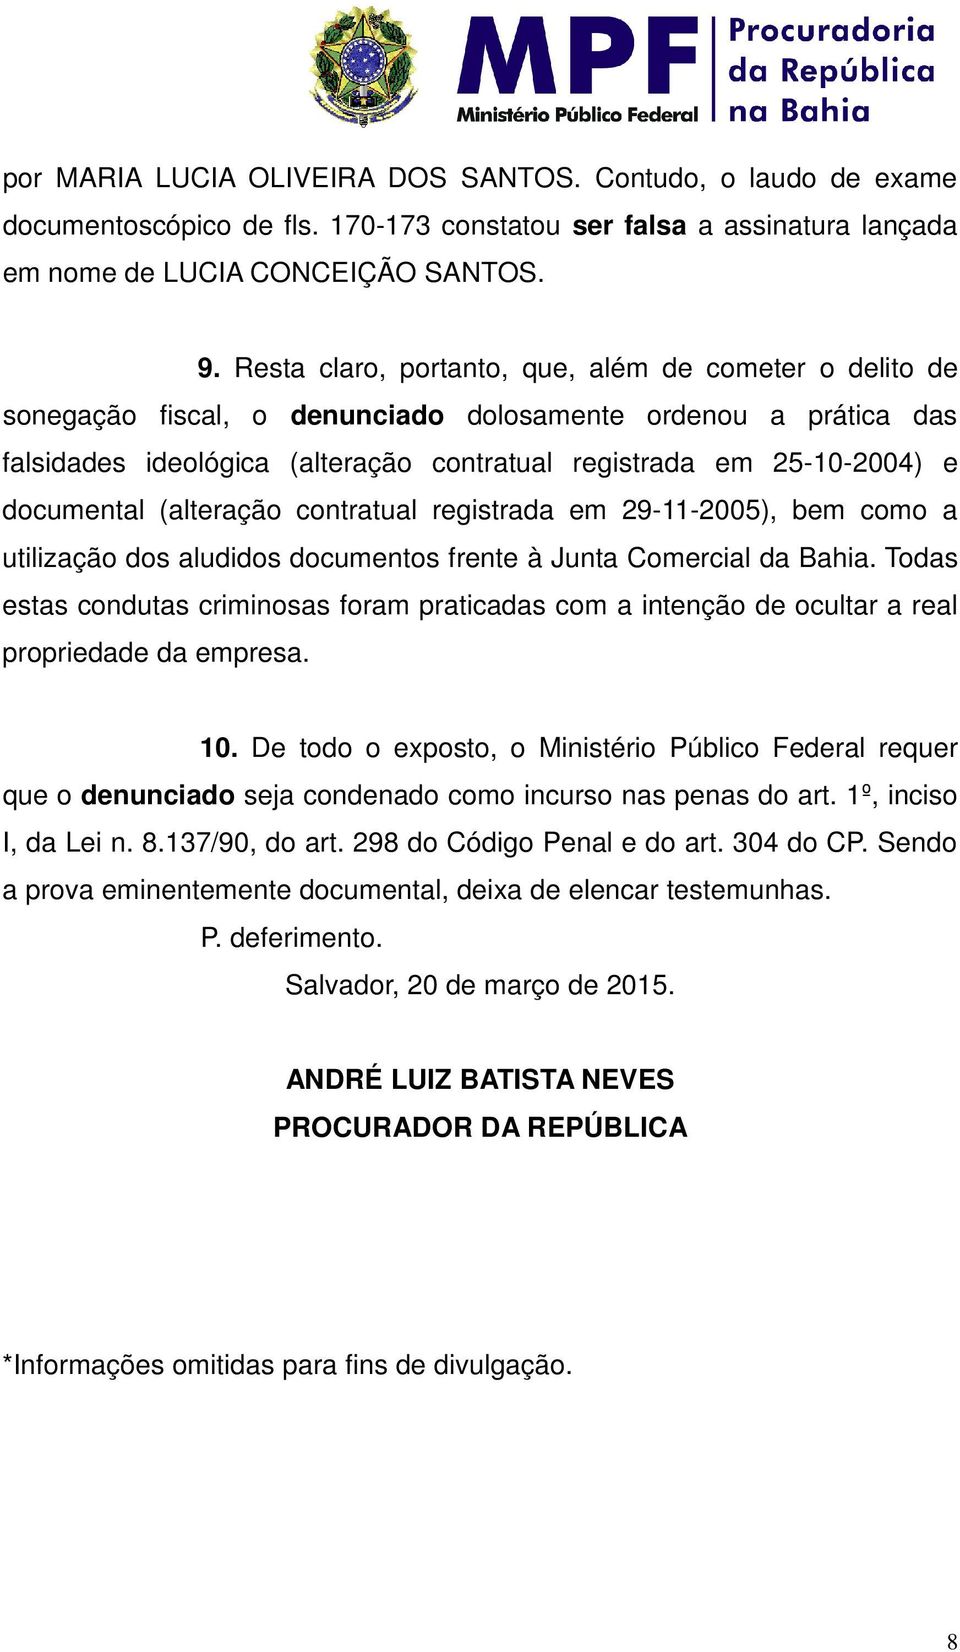 documental (alteração contratual registrada em 29-11-2005), bem como a utilização dos aludidos documentos frente à Junta Comercial da Bahia.